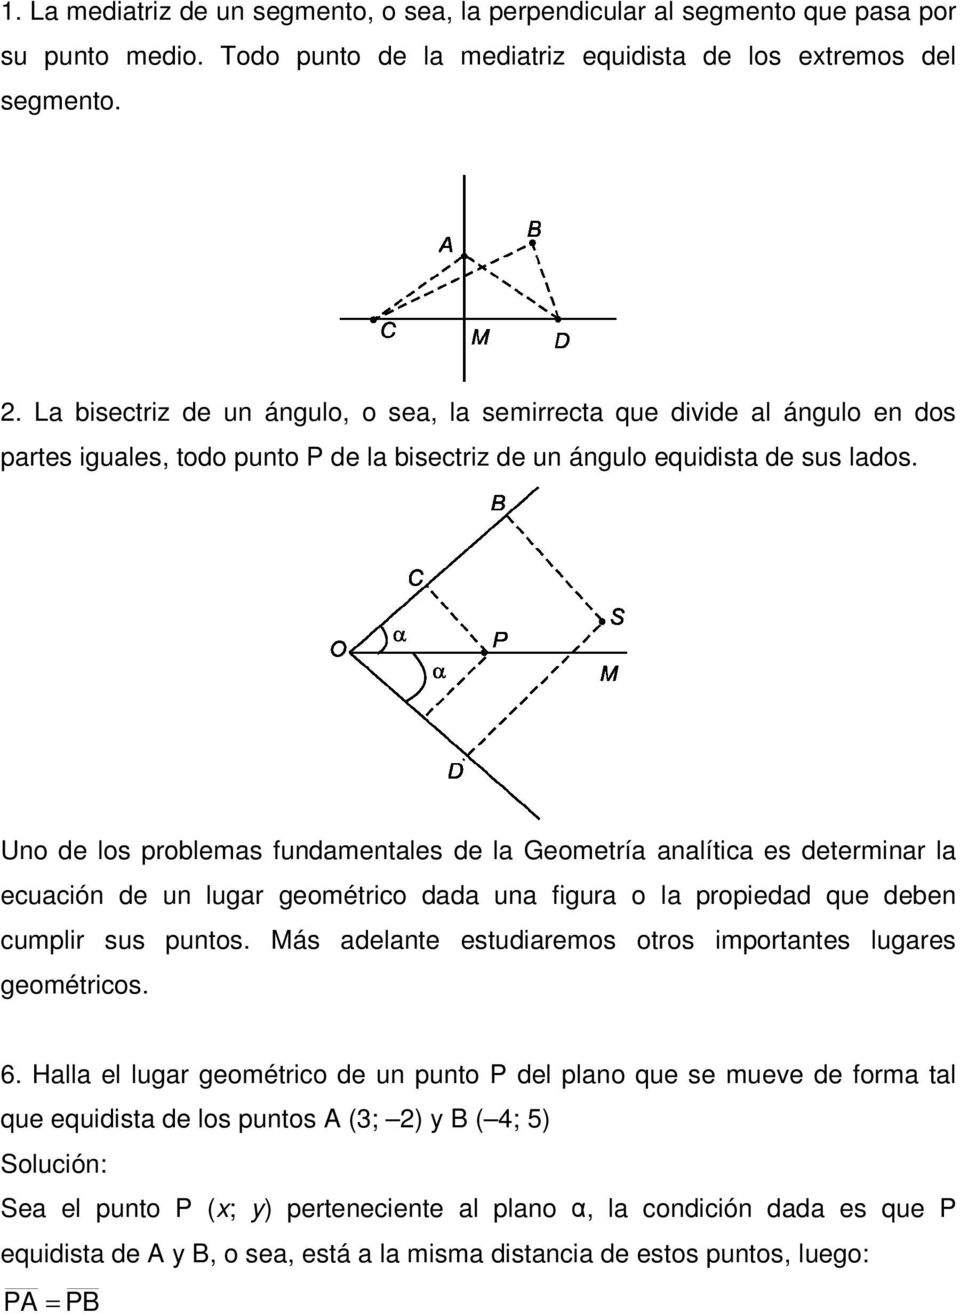 Uno de los problems fundmentles de l Geometrí nlític es determinr l ecución de un lugr geométrico dd un figur o l propiedd que deben cumplir sus puntos.